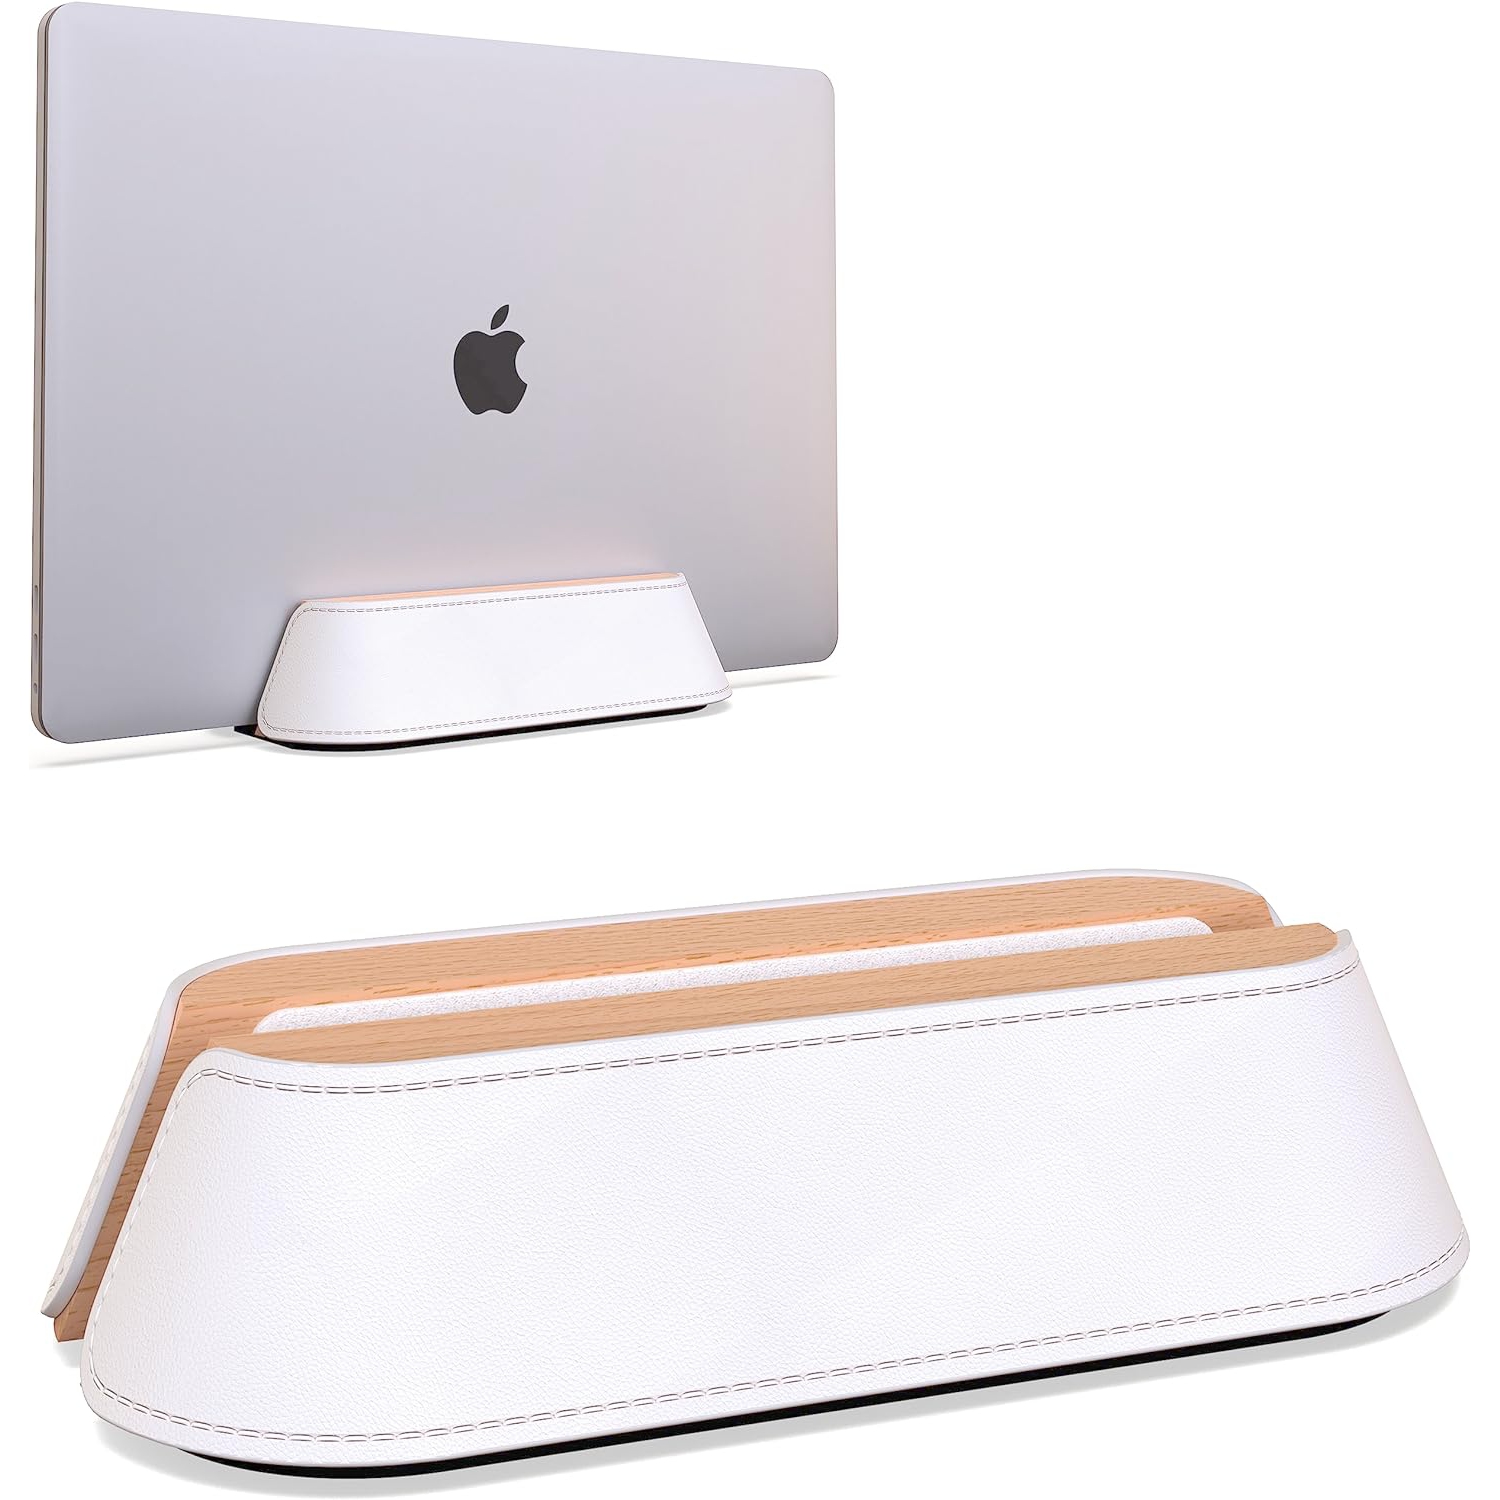 Vertical Laptop Stand for Desk, Adjustable Vertical Laptop Holder, Natural Wood and Leather Desktop Dock